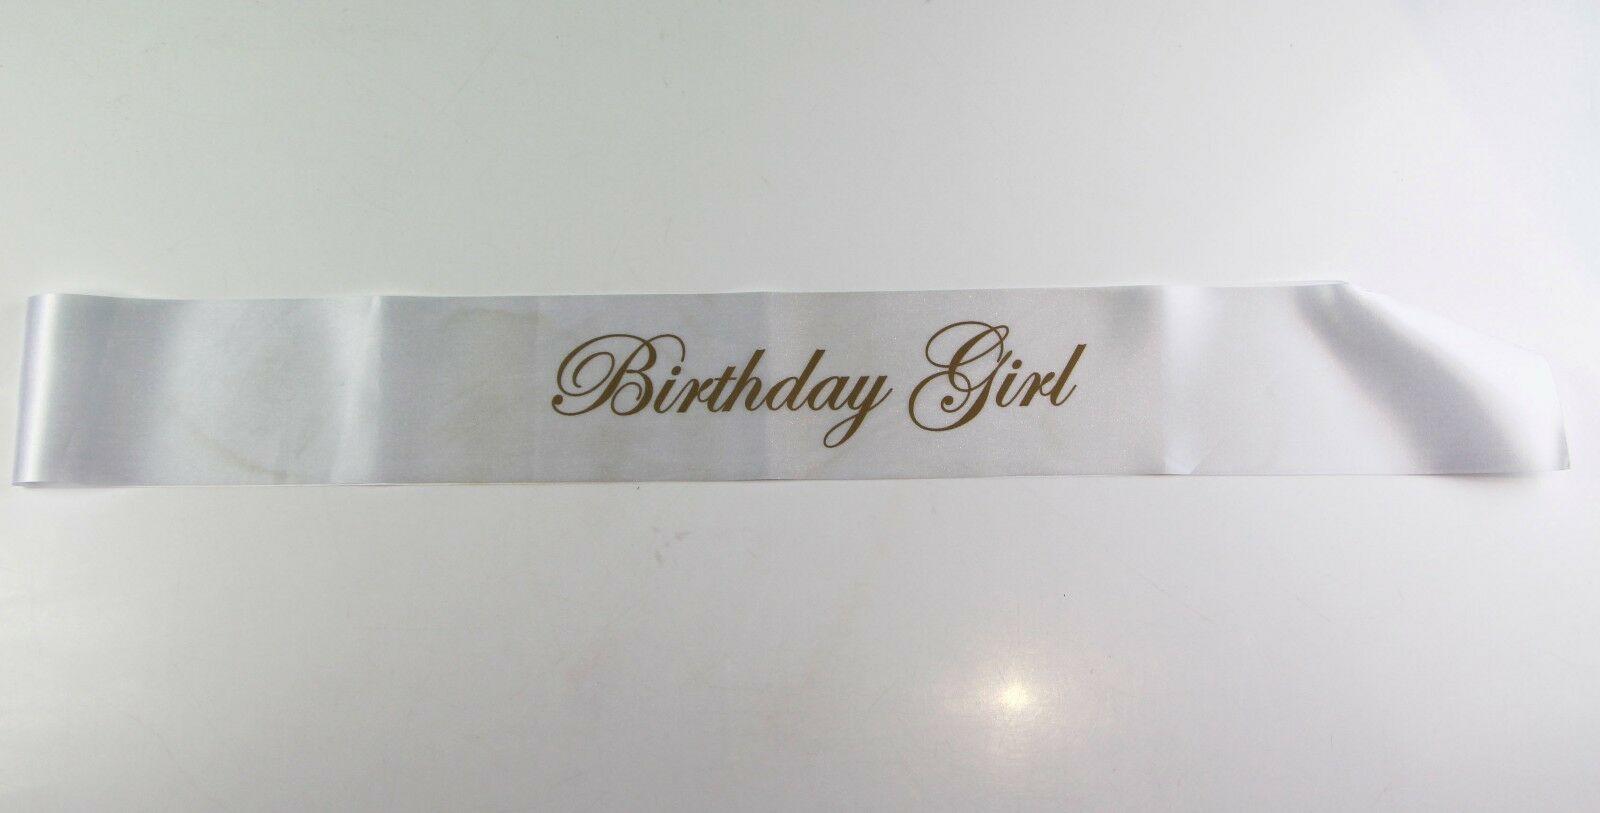 Birthday Girl Sash - Party - White/Gold Edwardian Font